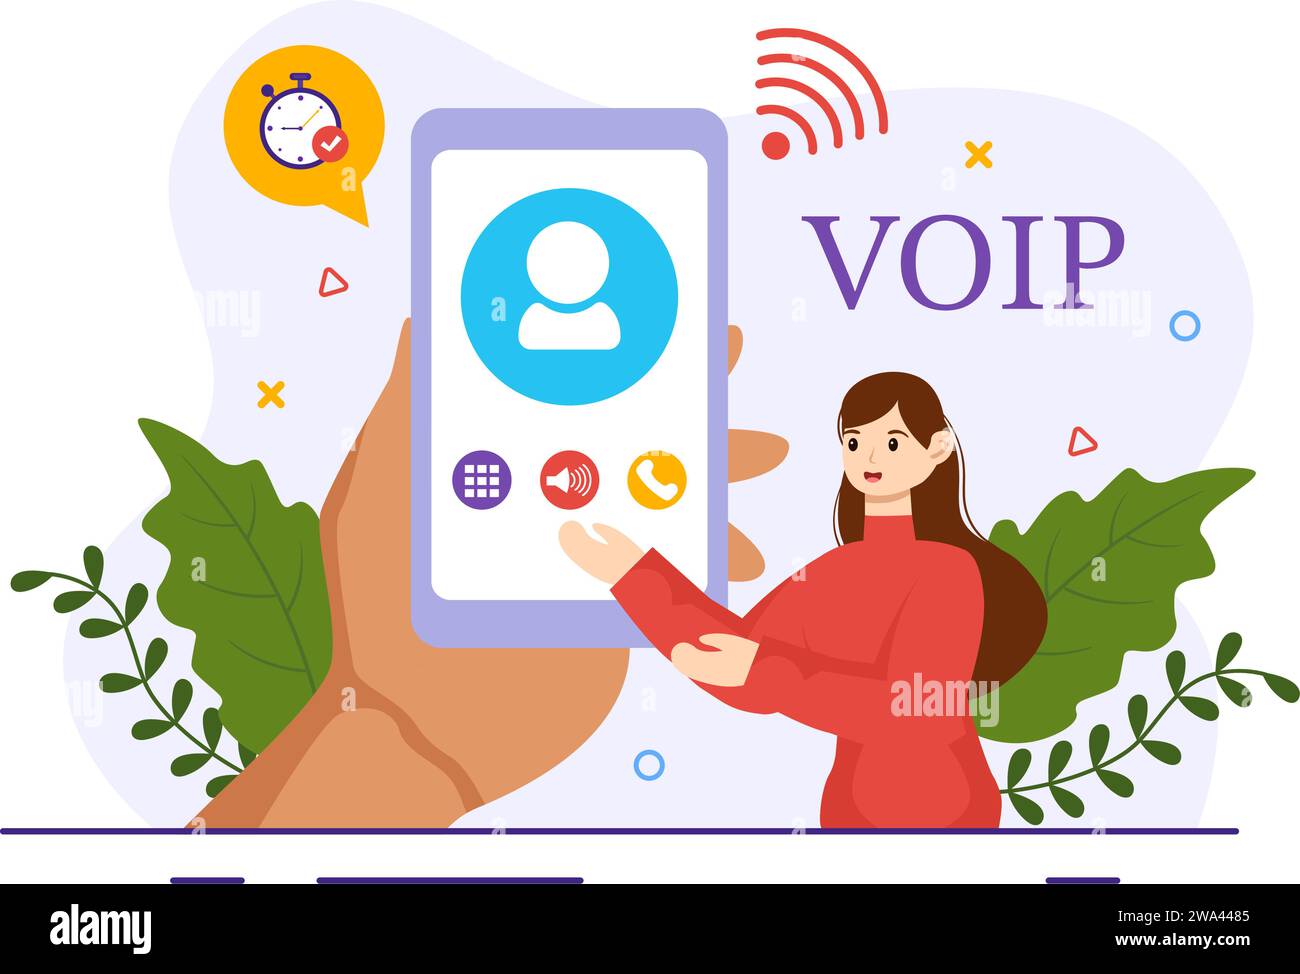 VOIP- oder Voice-over-Internet-Protokoll-Vektor-Illustration mit Telefonie-Schematechnologie und Network Phone Call Software in flachem Hintergrund Stock Vektor